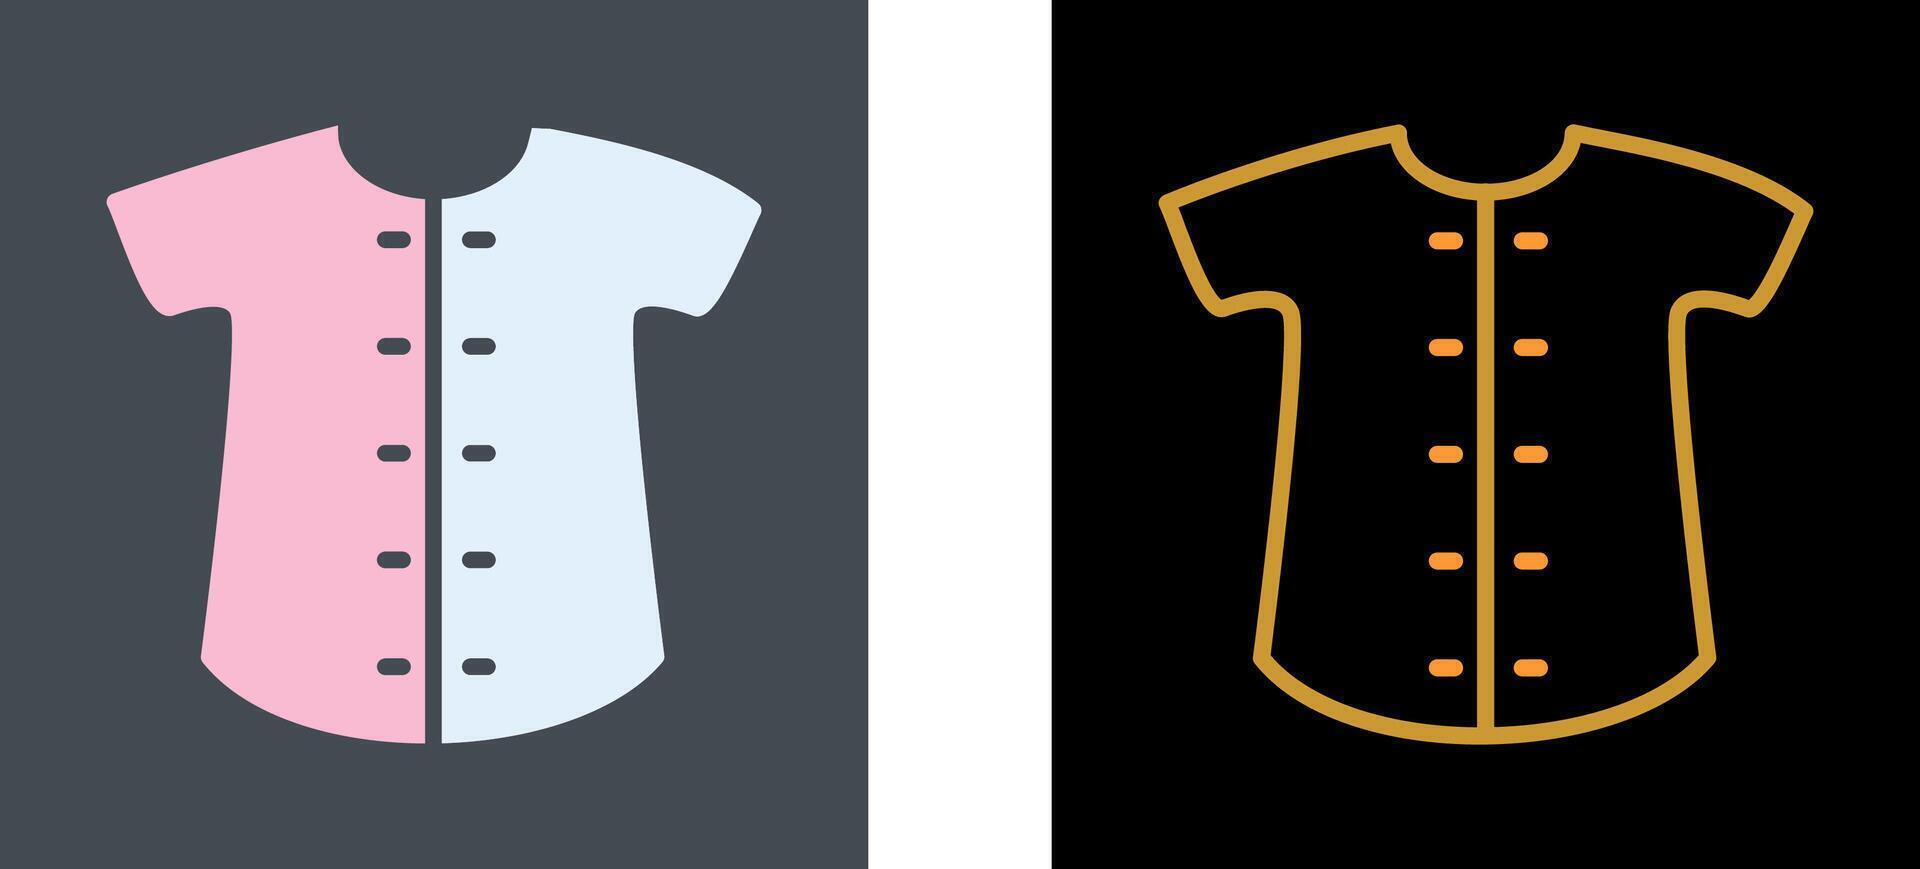 Check Shirt Icon Design vector